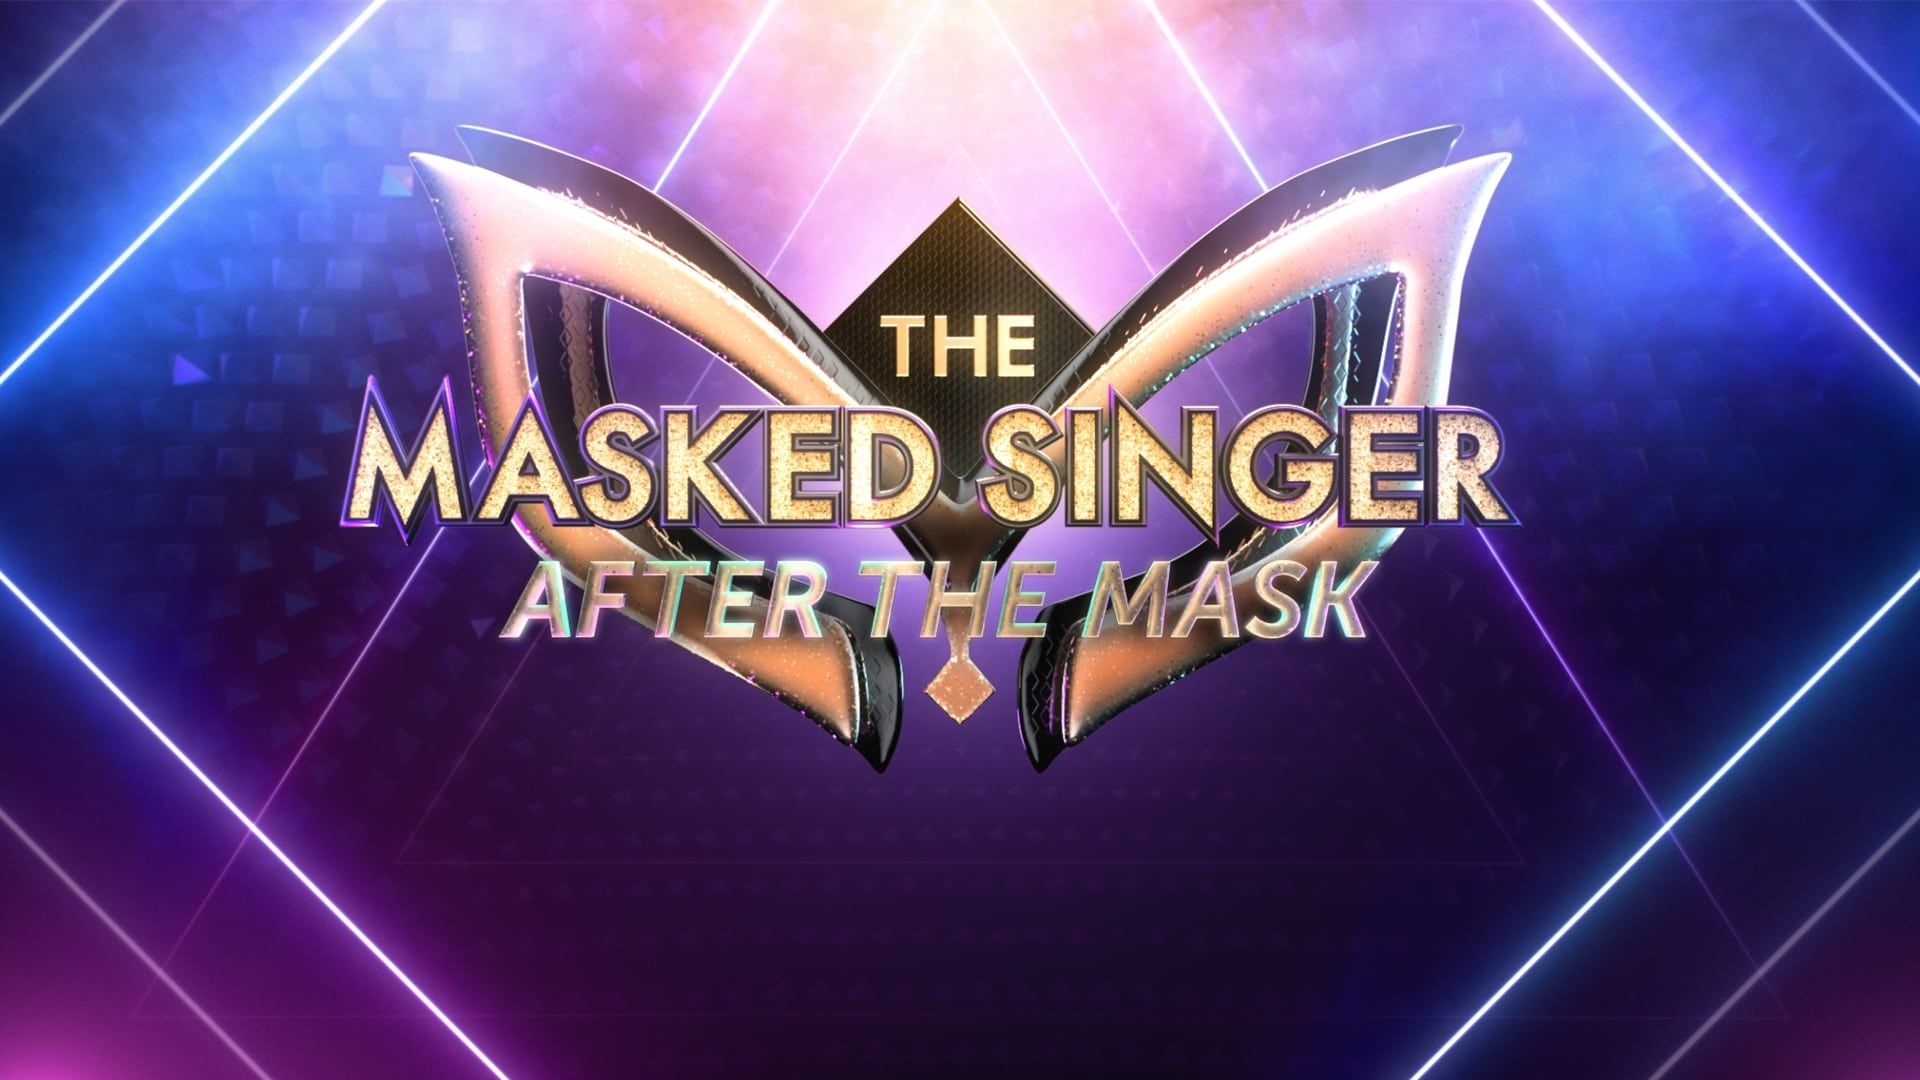 The Masked Singer background